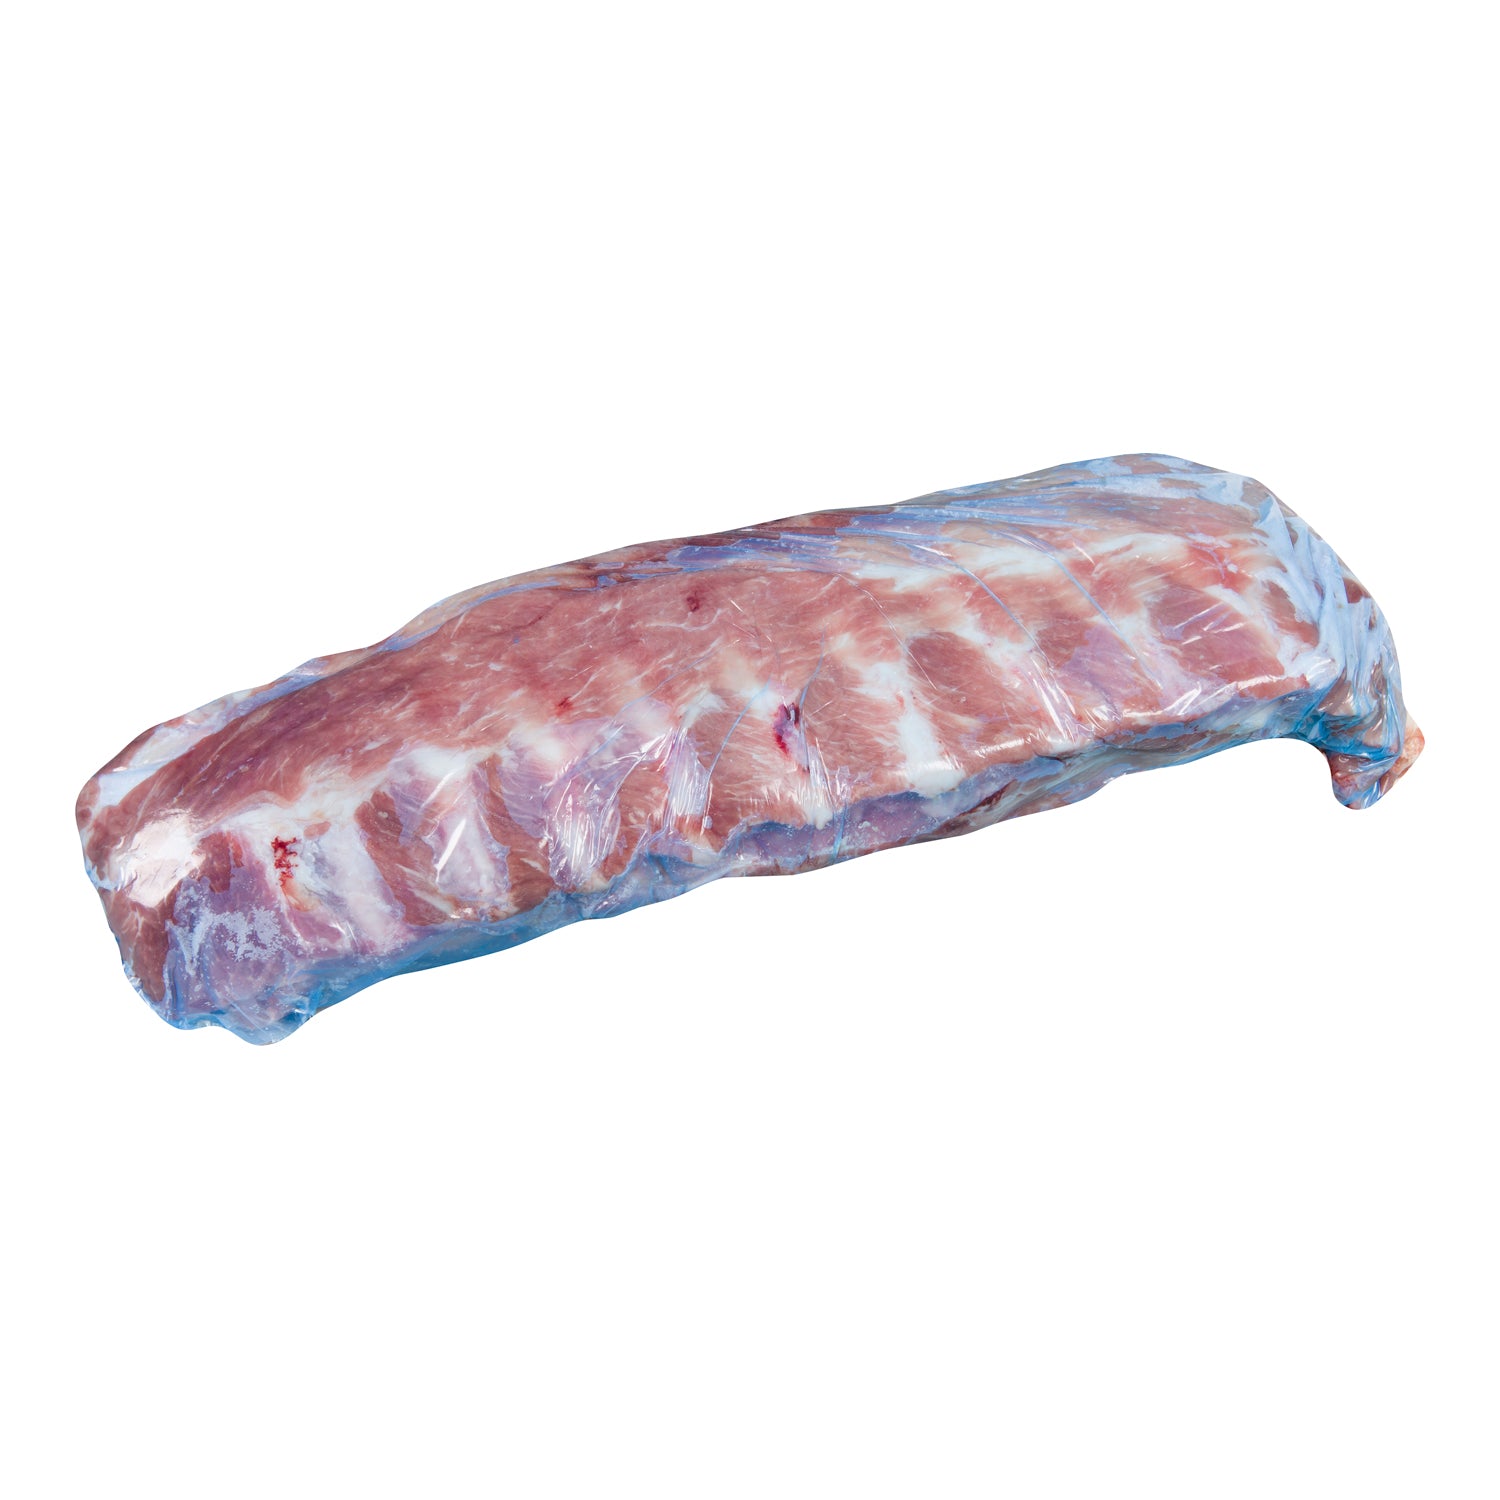 Maple Leaf Pork Back Ribs Approx. 10kg [$6.78/kg] [$3.08/lb]